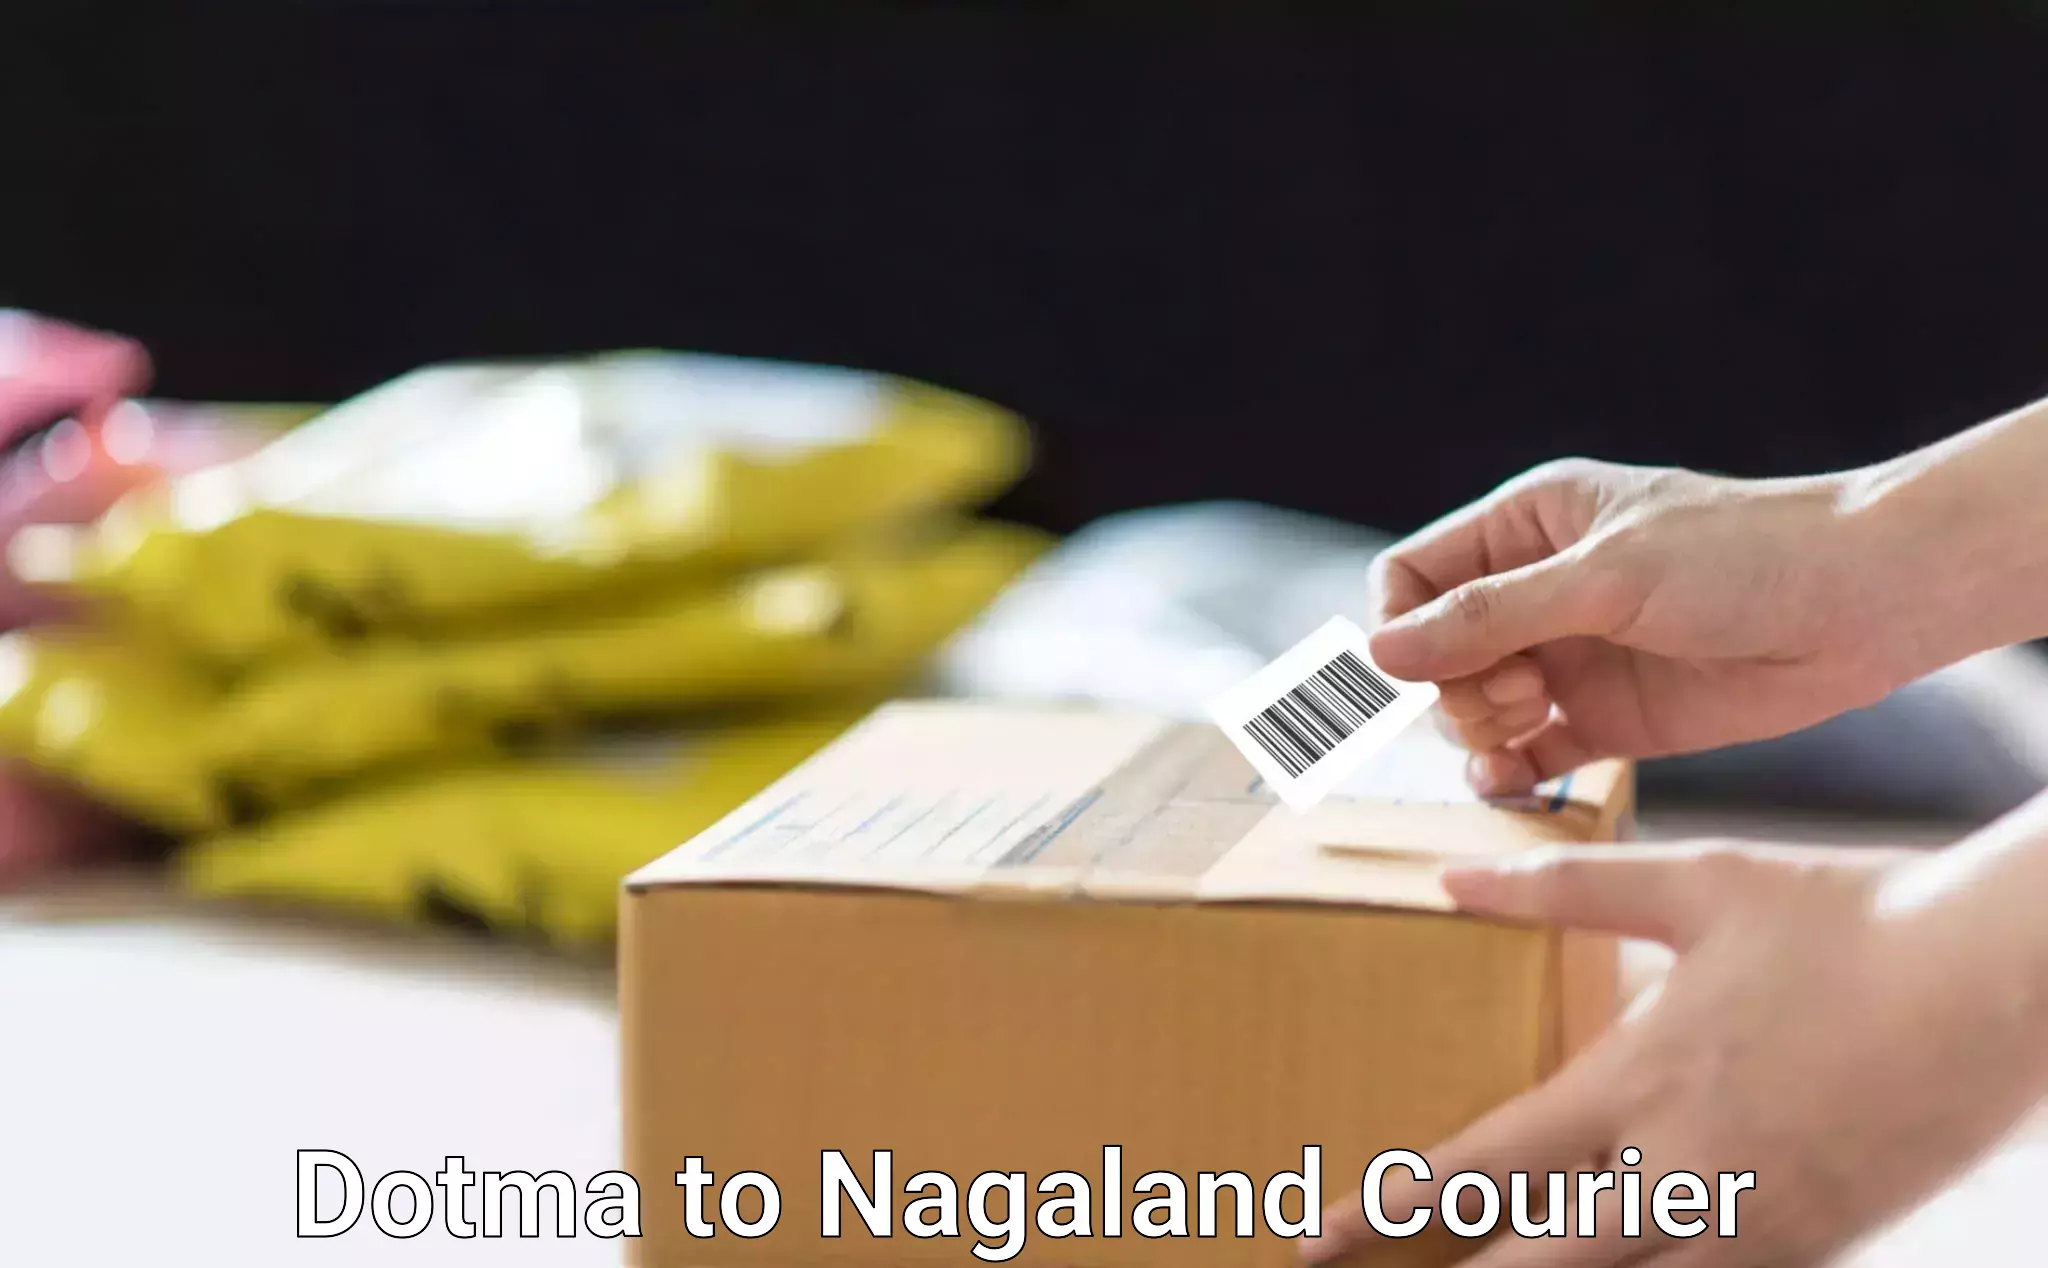 Courier app Dotma to Nagaland